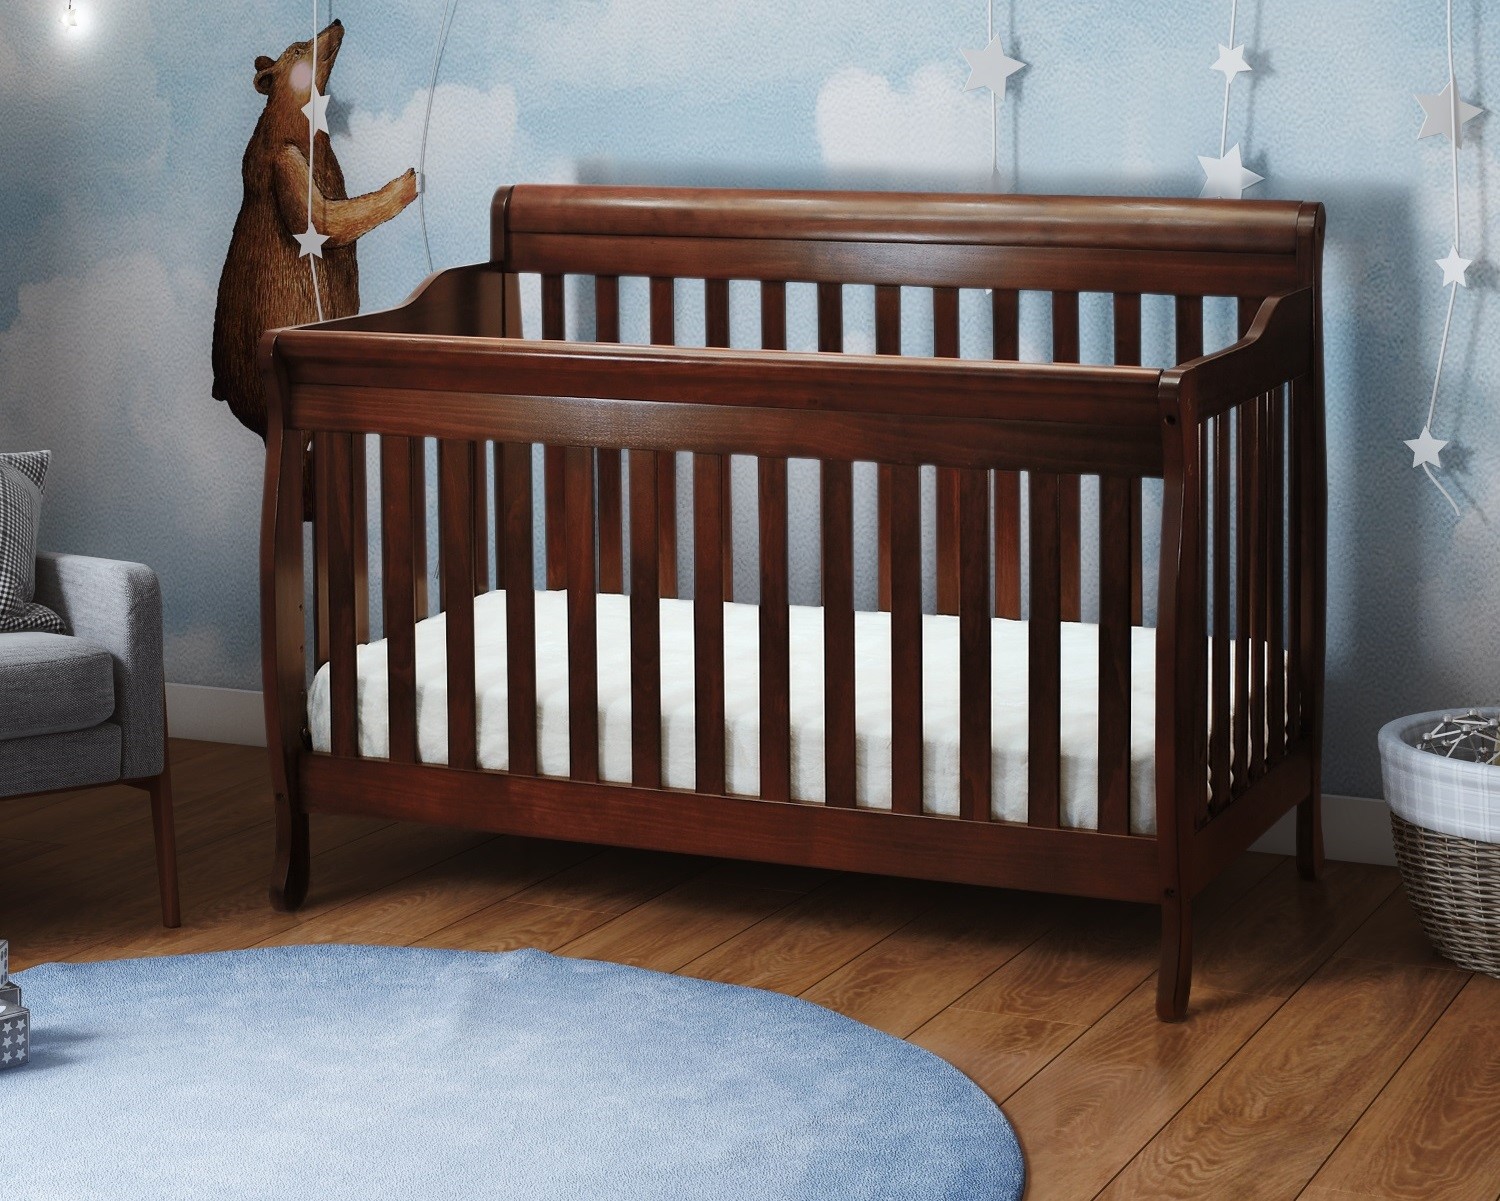 Afg Athena Alice 3 In 1 Convertible Crib With Toddler Rail - Espresso - 4689e